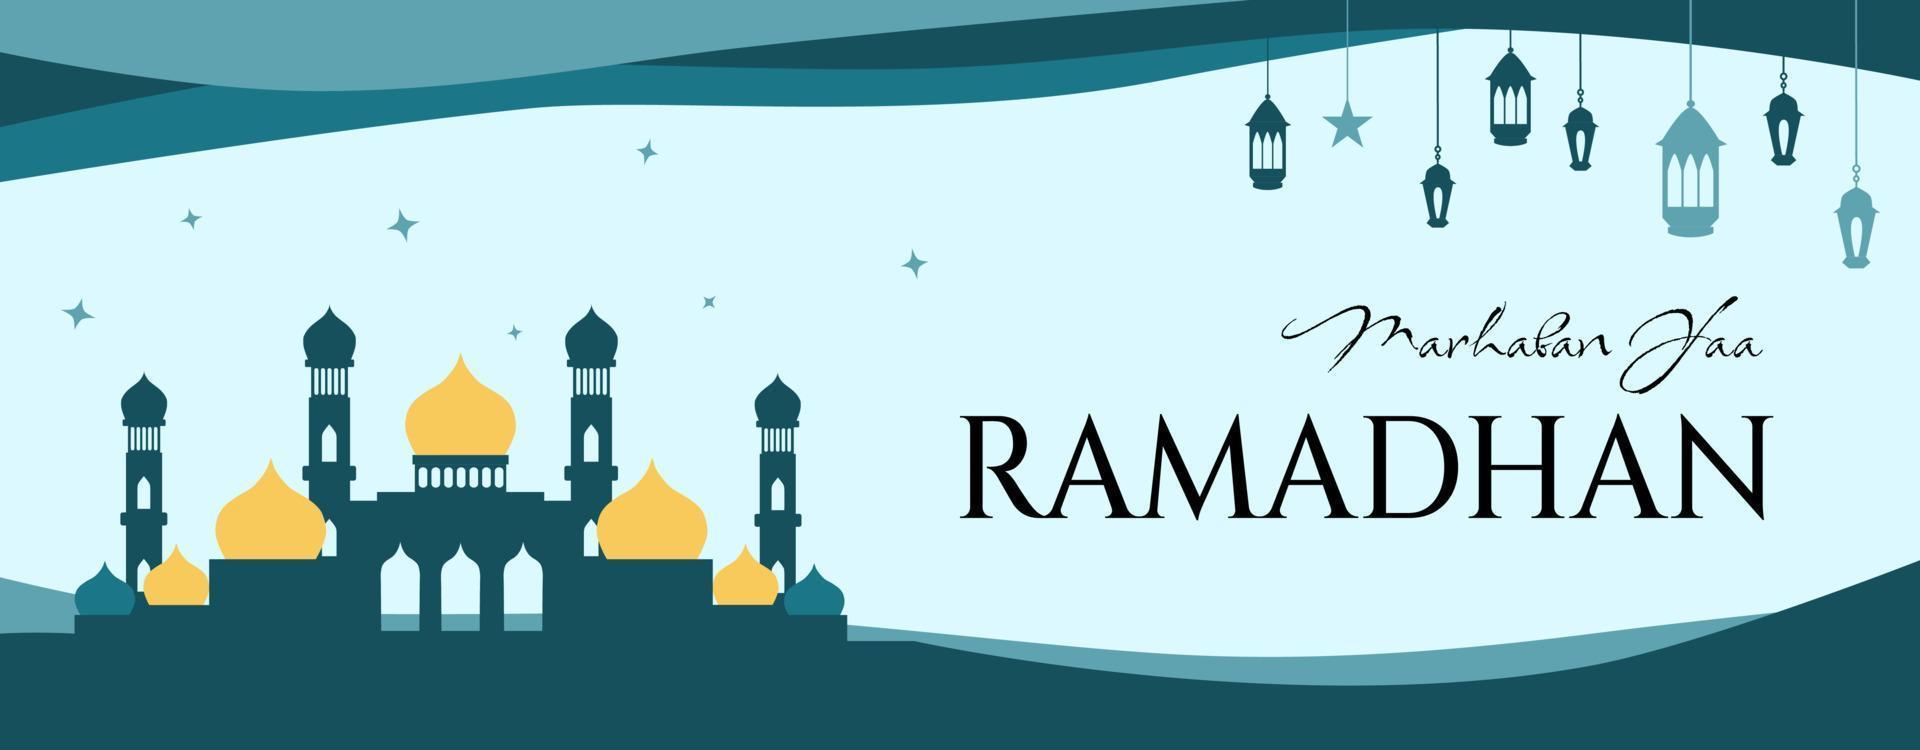 ramadan baner mall med moské illustration vektor